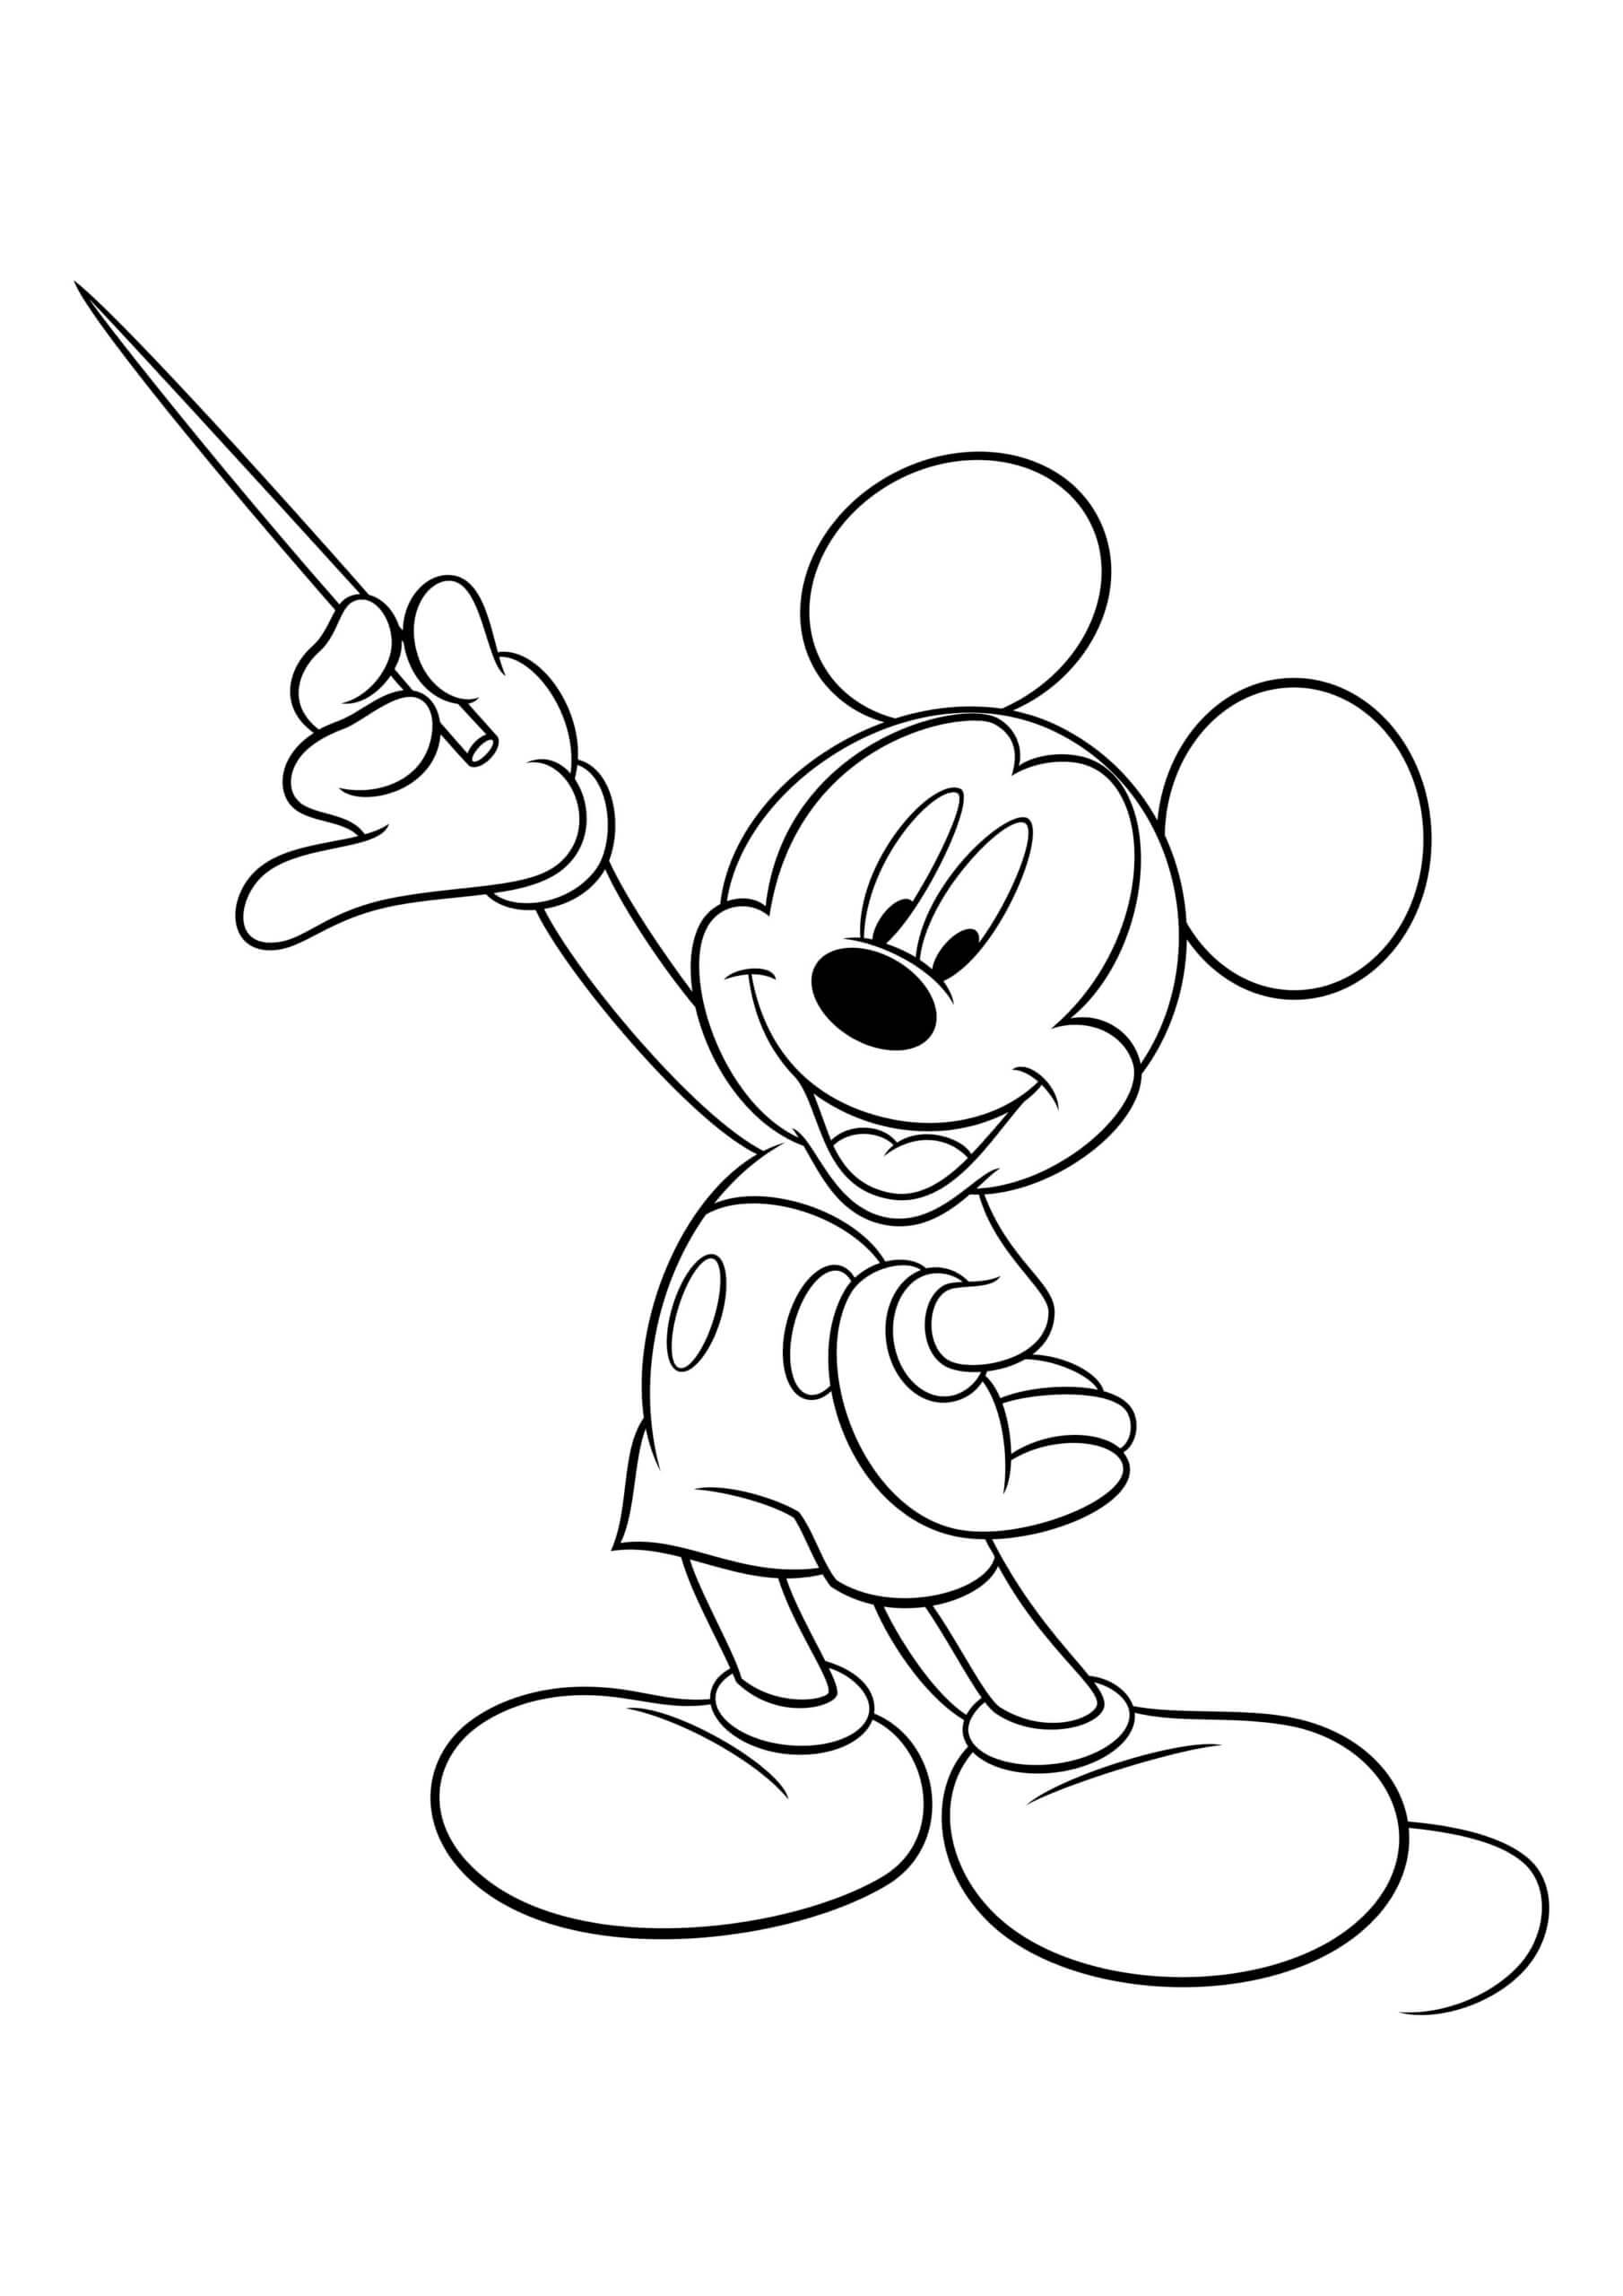 Mickey Mouse Sosteniendo un Palo